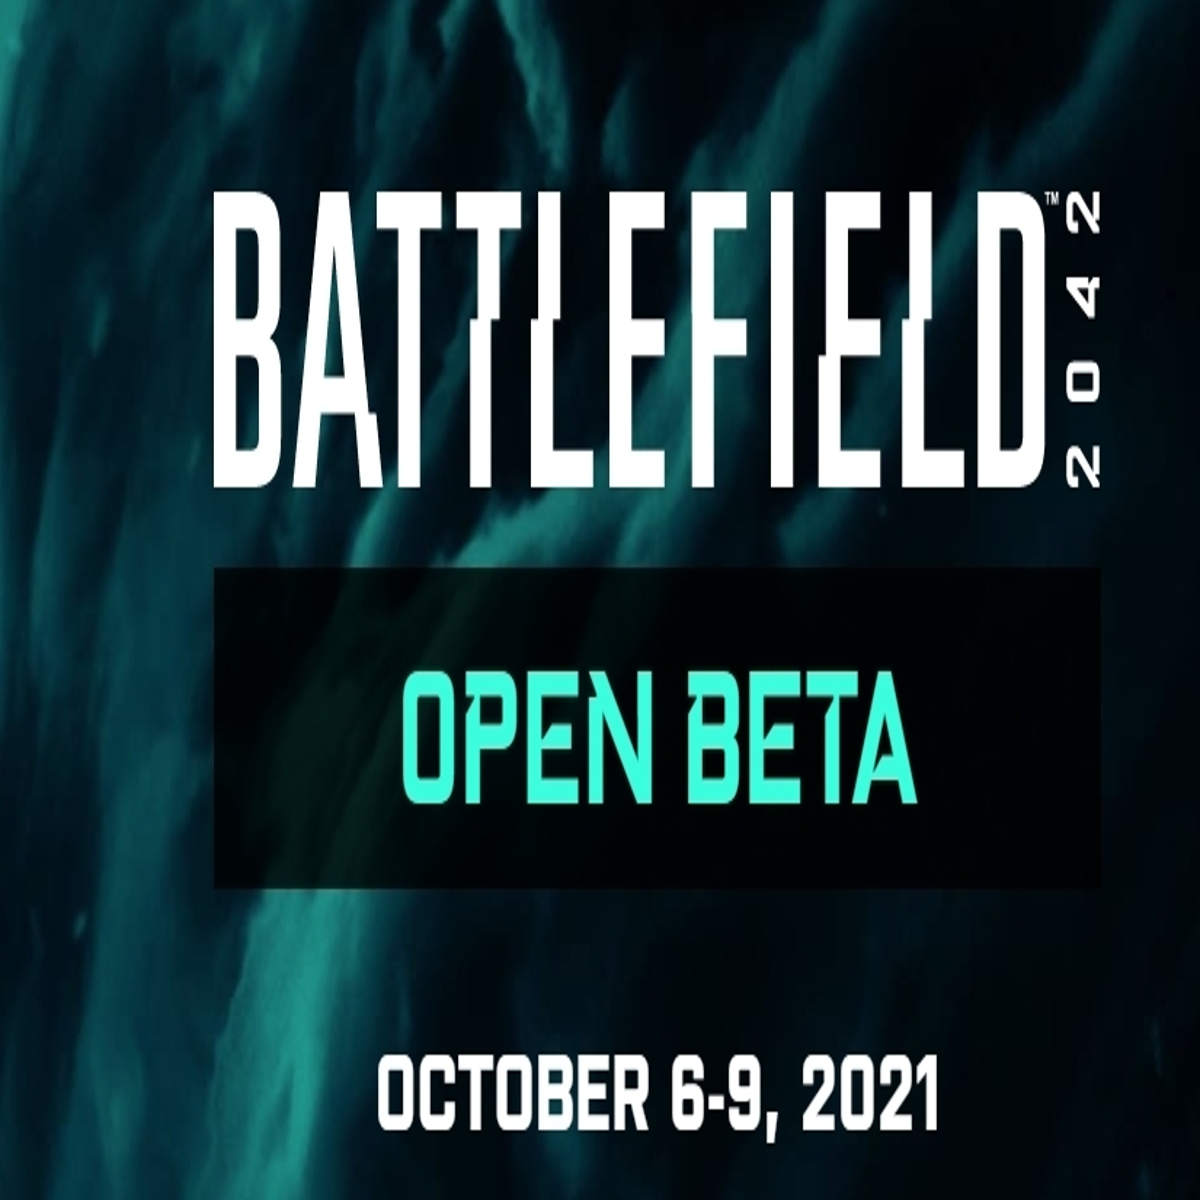 Battlefield 2042: Requisitos mínimos e recomendados para rodar no PC